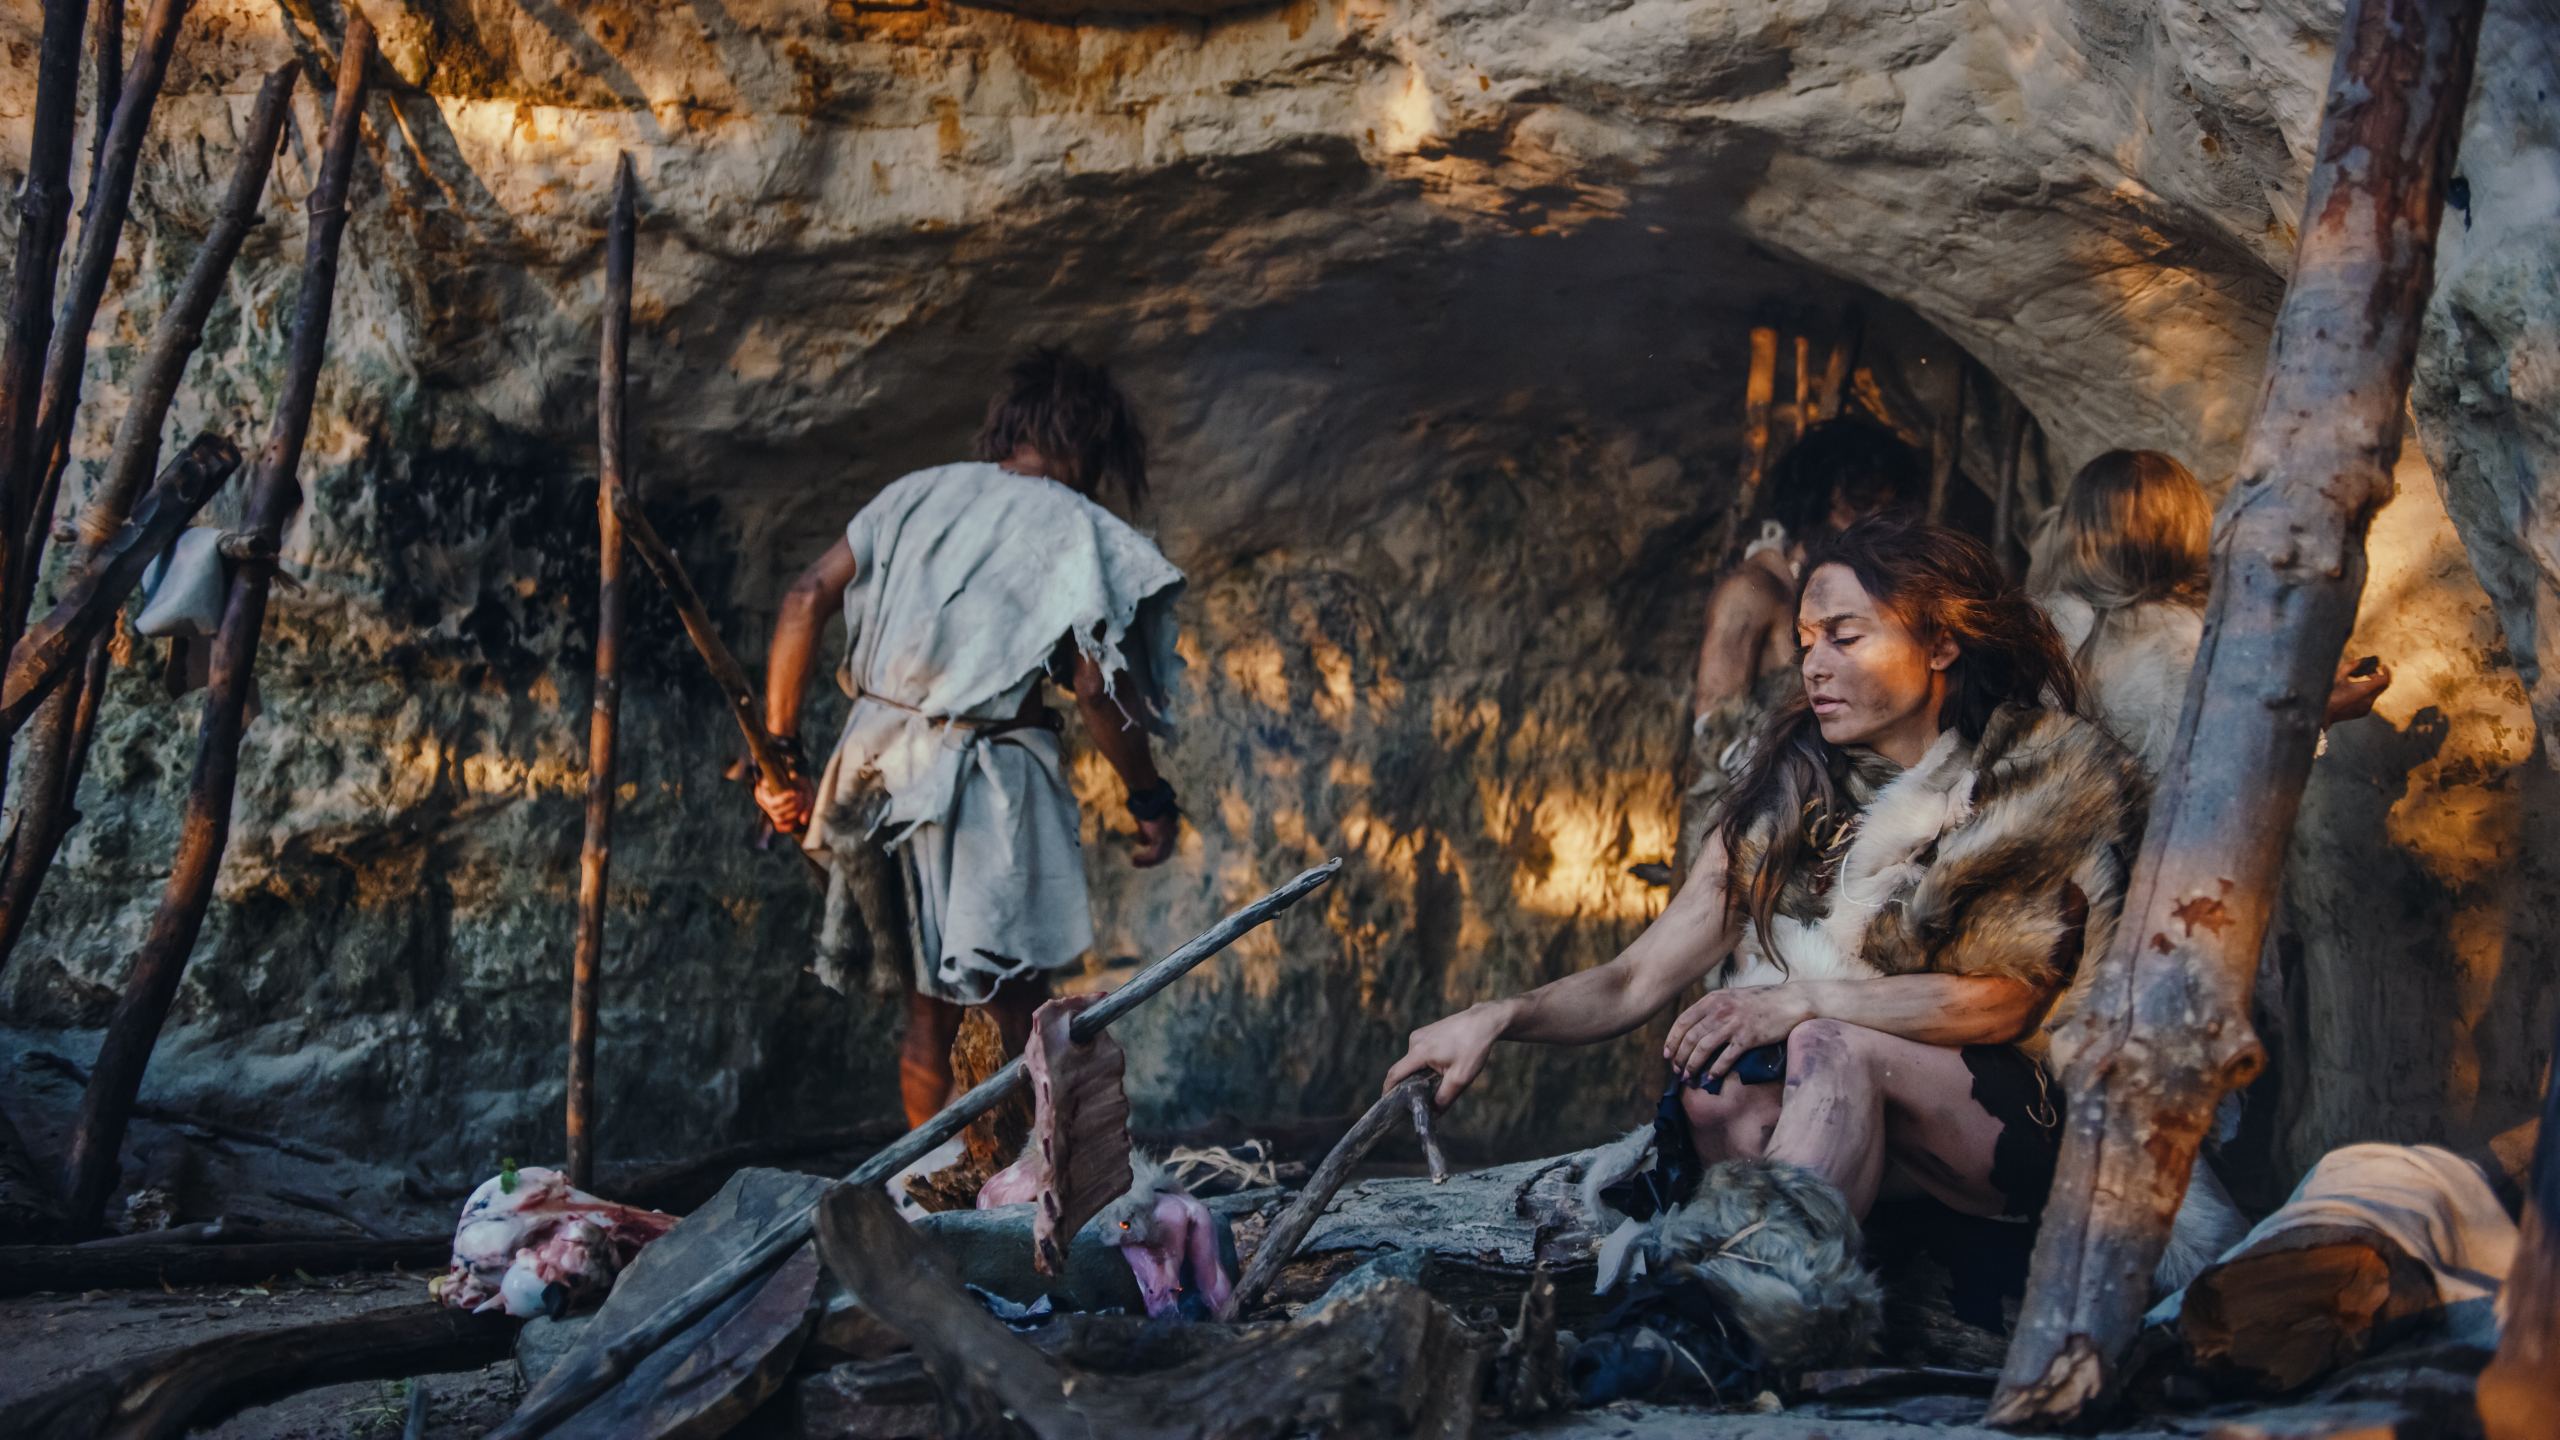 Una imagen recreativa de la familia neandertal Homo Sapiens. Tribu de cazadores-recolectores que visten pieles de animales viven en una cueva. Líder trae presas animales de la caza, una mujer cocina comida en una hoguera, una niña dibuja en Wals creando arte.